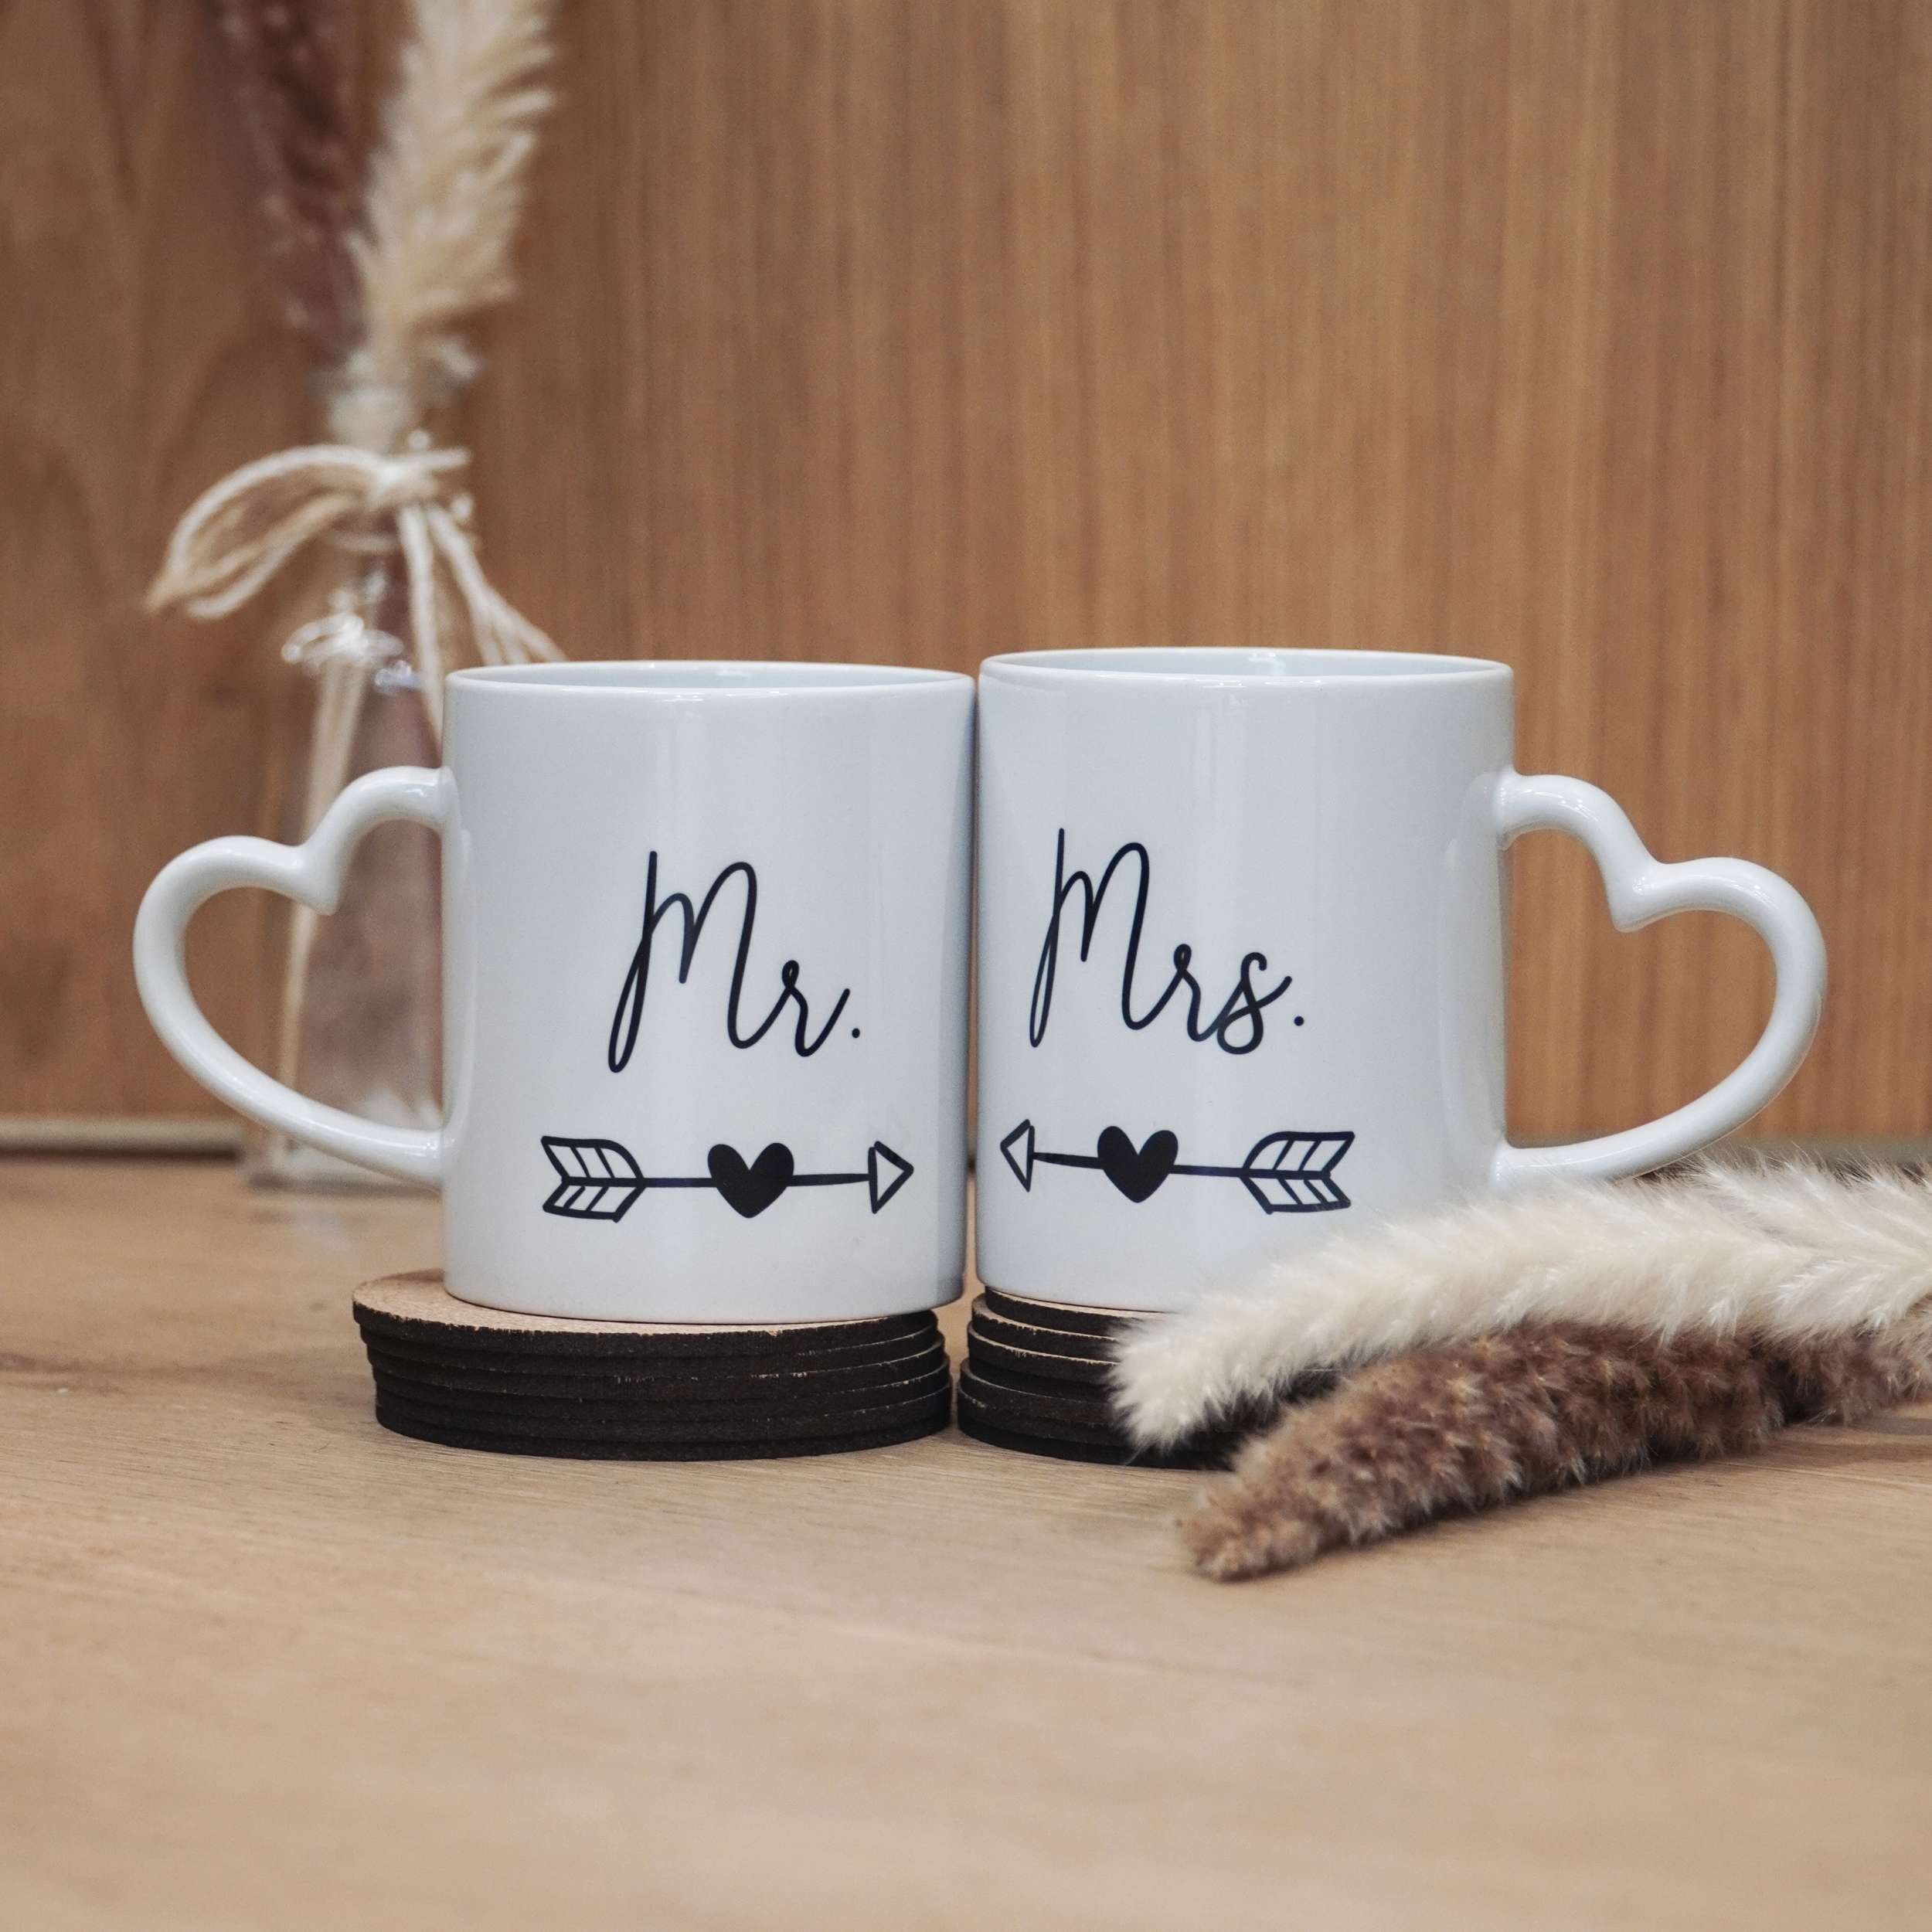 Unsere hochwertigen, Statement-Keramiktassen sind ein absolutes Must-have und persönliches Geschenk zur Hochzeit.